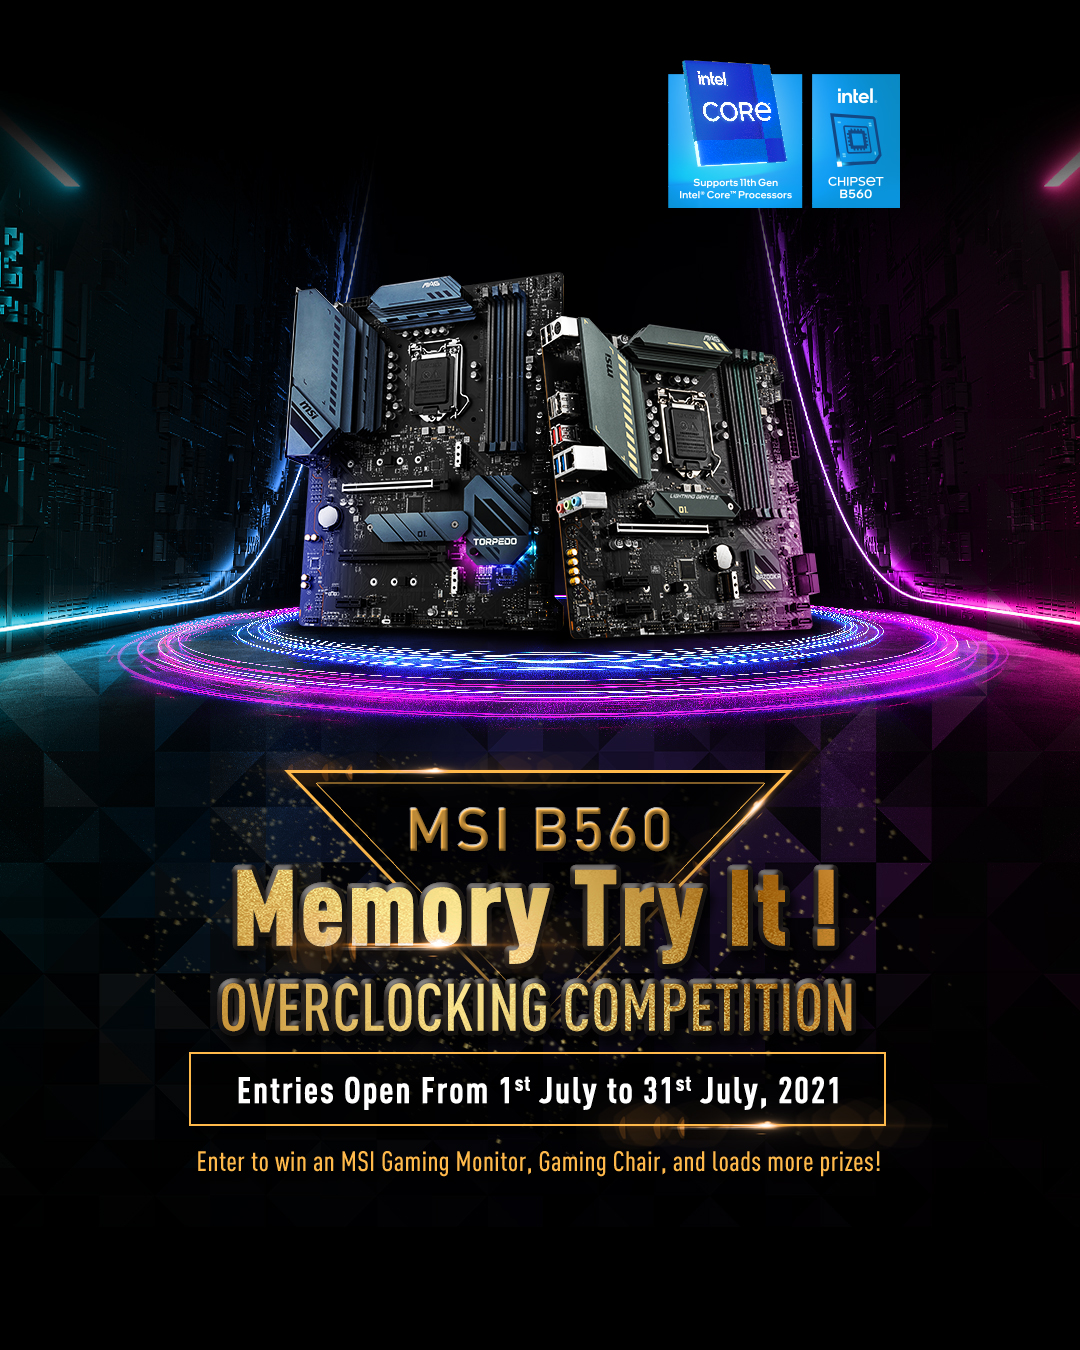 MSI Tổ chức cuộc thi Ép xung bộ nhớ “B560 Memory Try It!” tại Việt Nam cho người dùng tham gia với nhiều giải thưởng hấp dẫn